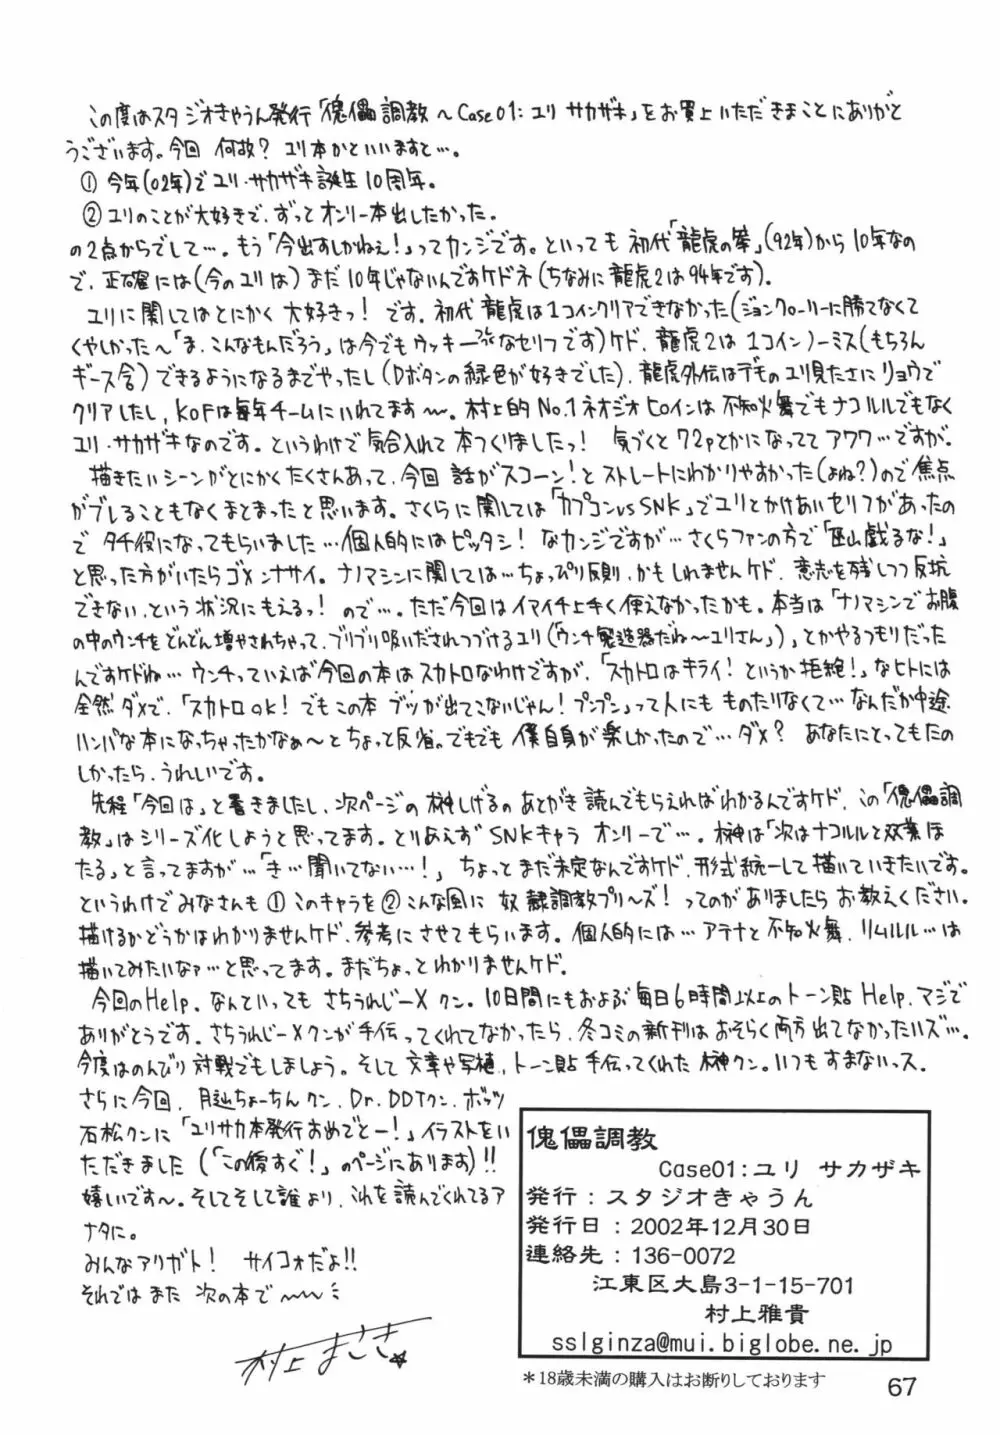 傀儡調教 Case01:ユリ サカザキ 67ページ